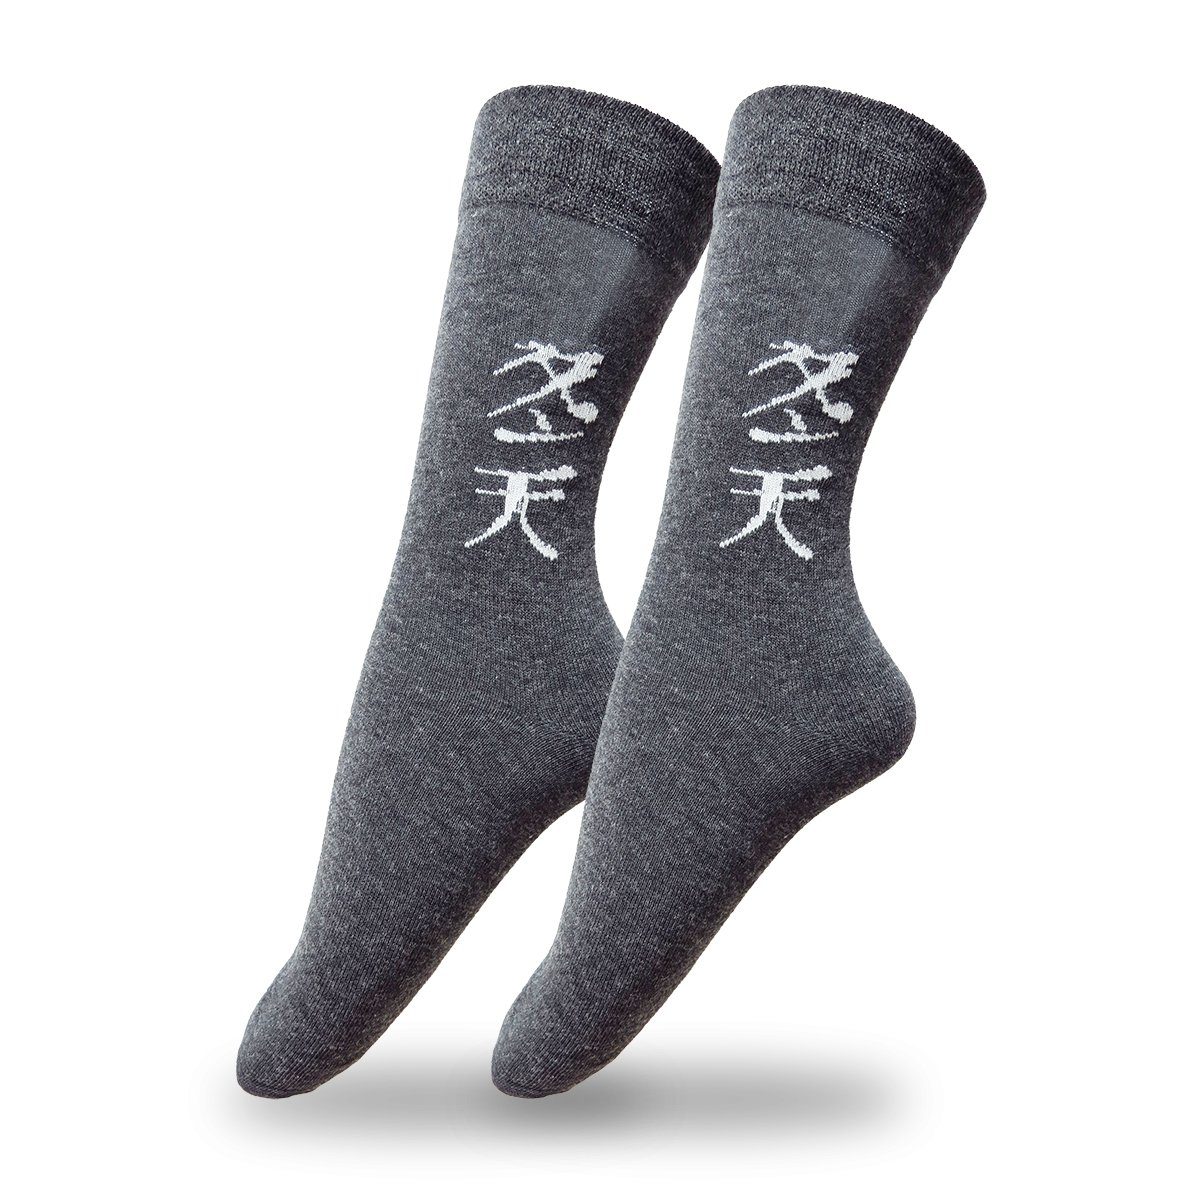 "Asia" Originelli dgrau Socken Schriftsymbol Sonia soft, Norwegersocken knöchellang 1 Paar Bund elastischer